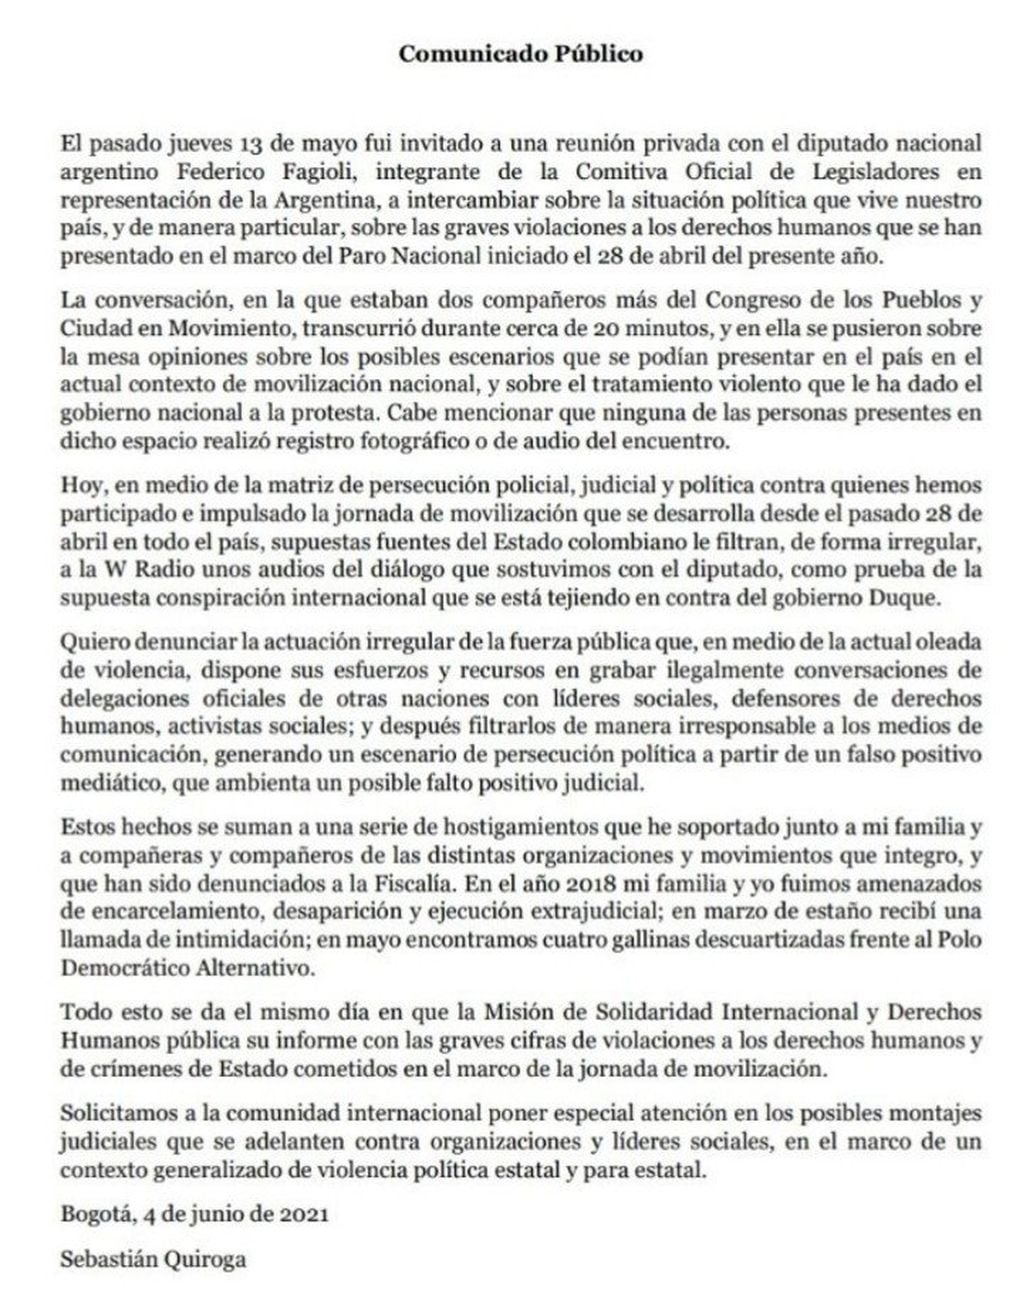 El comunicado de Sebastián Quiroga.